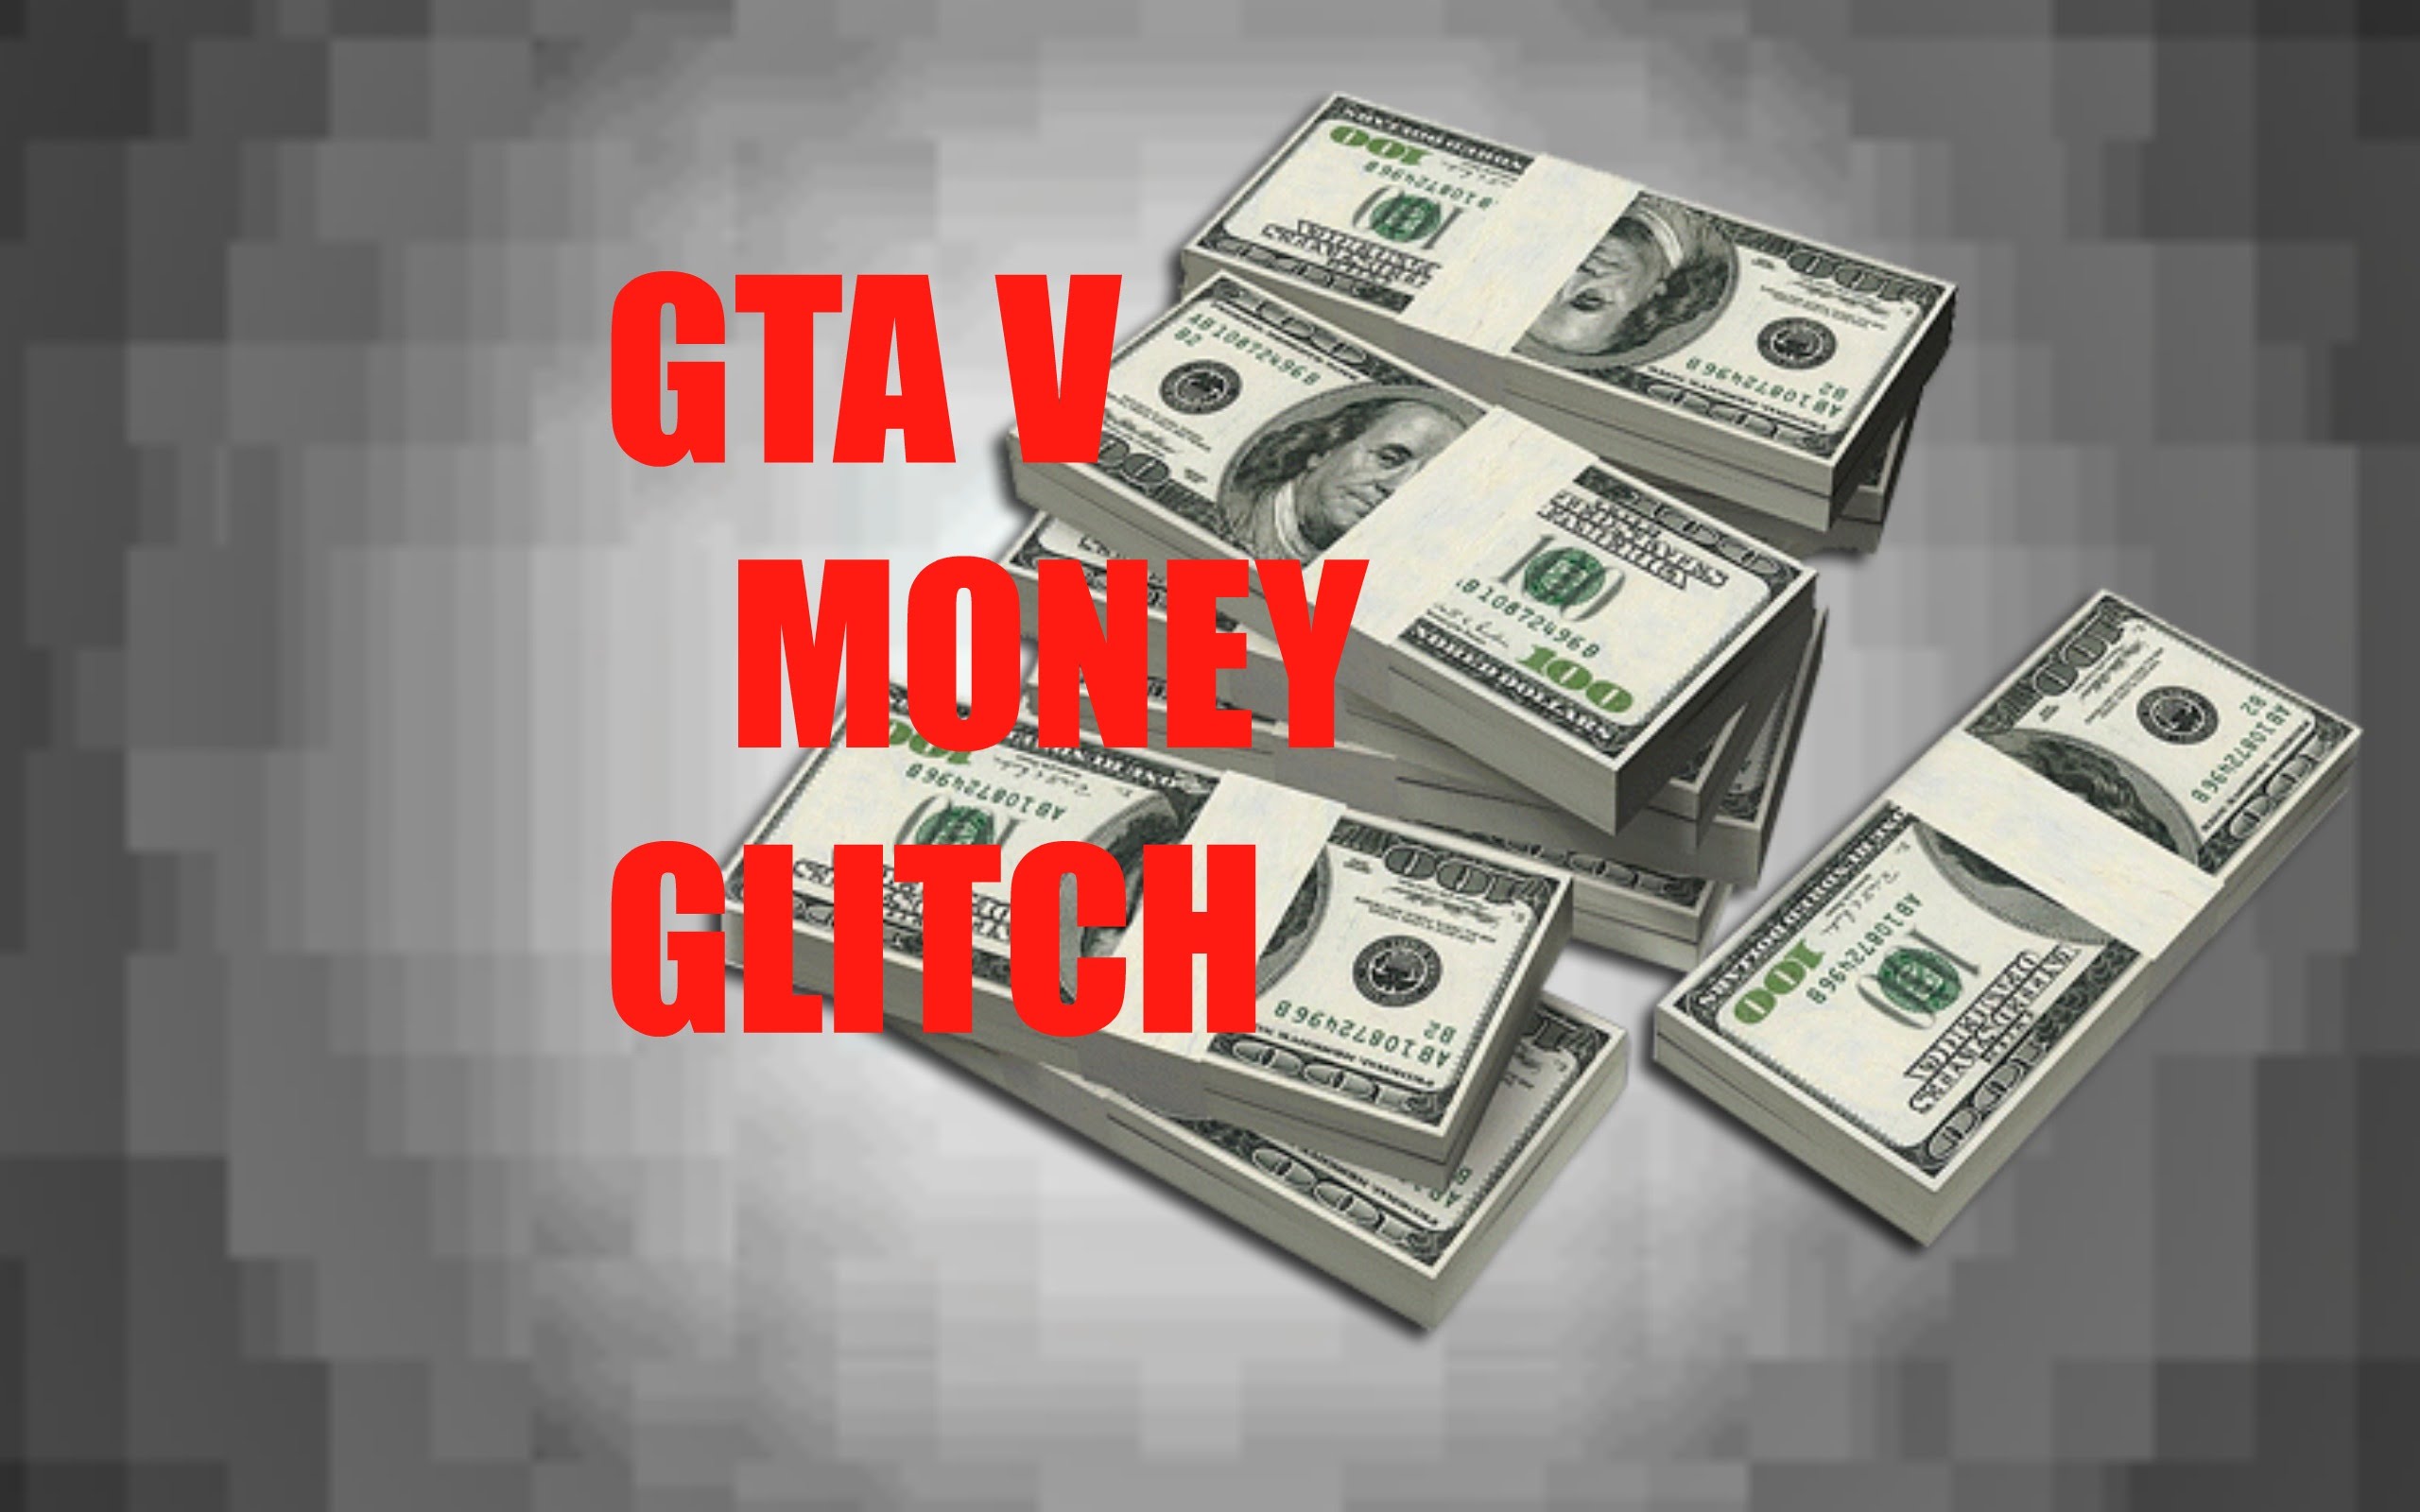 Gta 5 money glitch фото 31